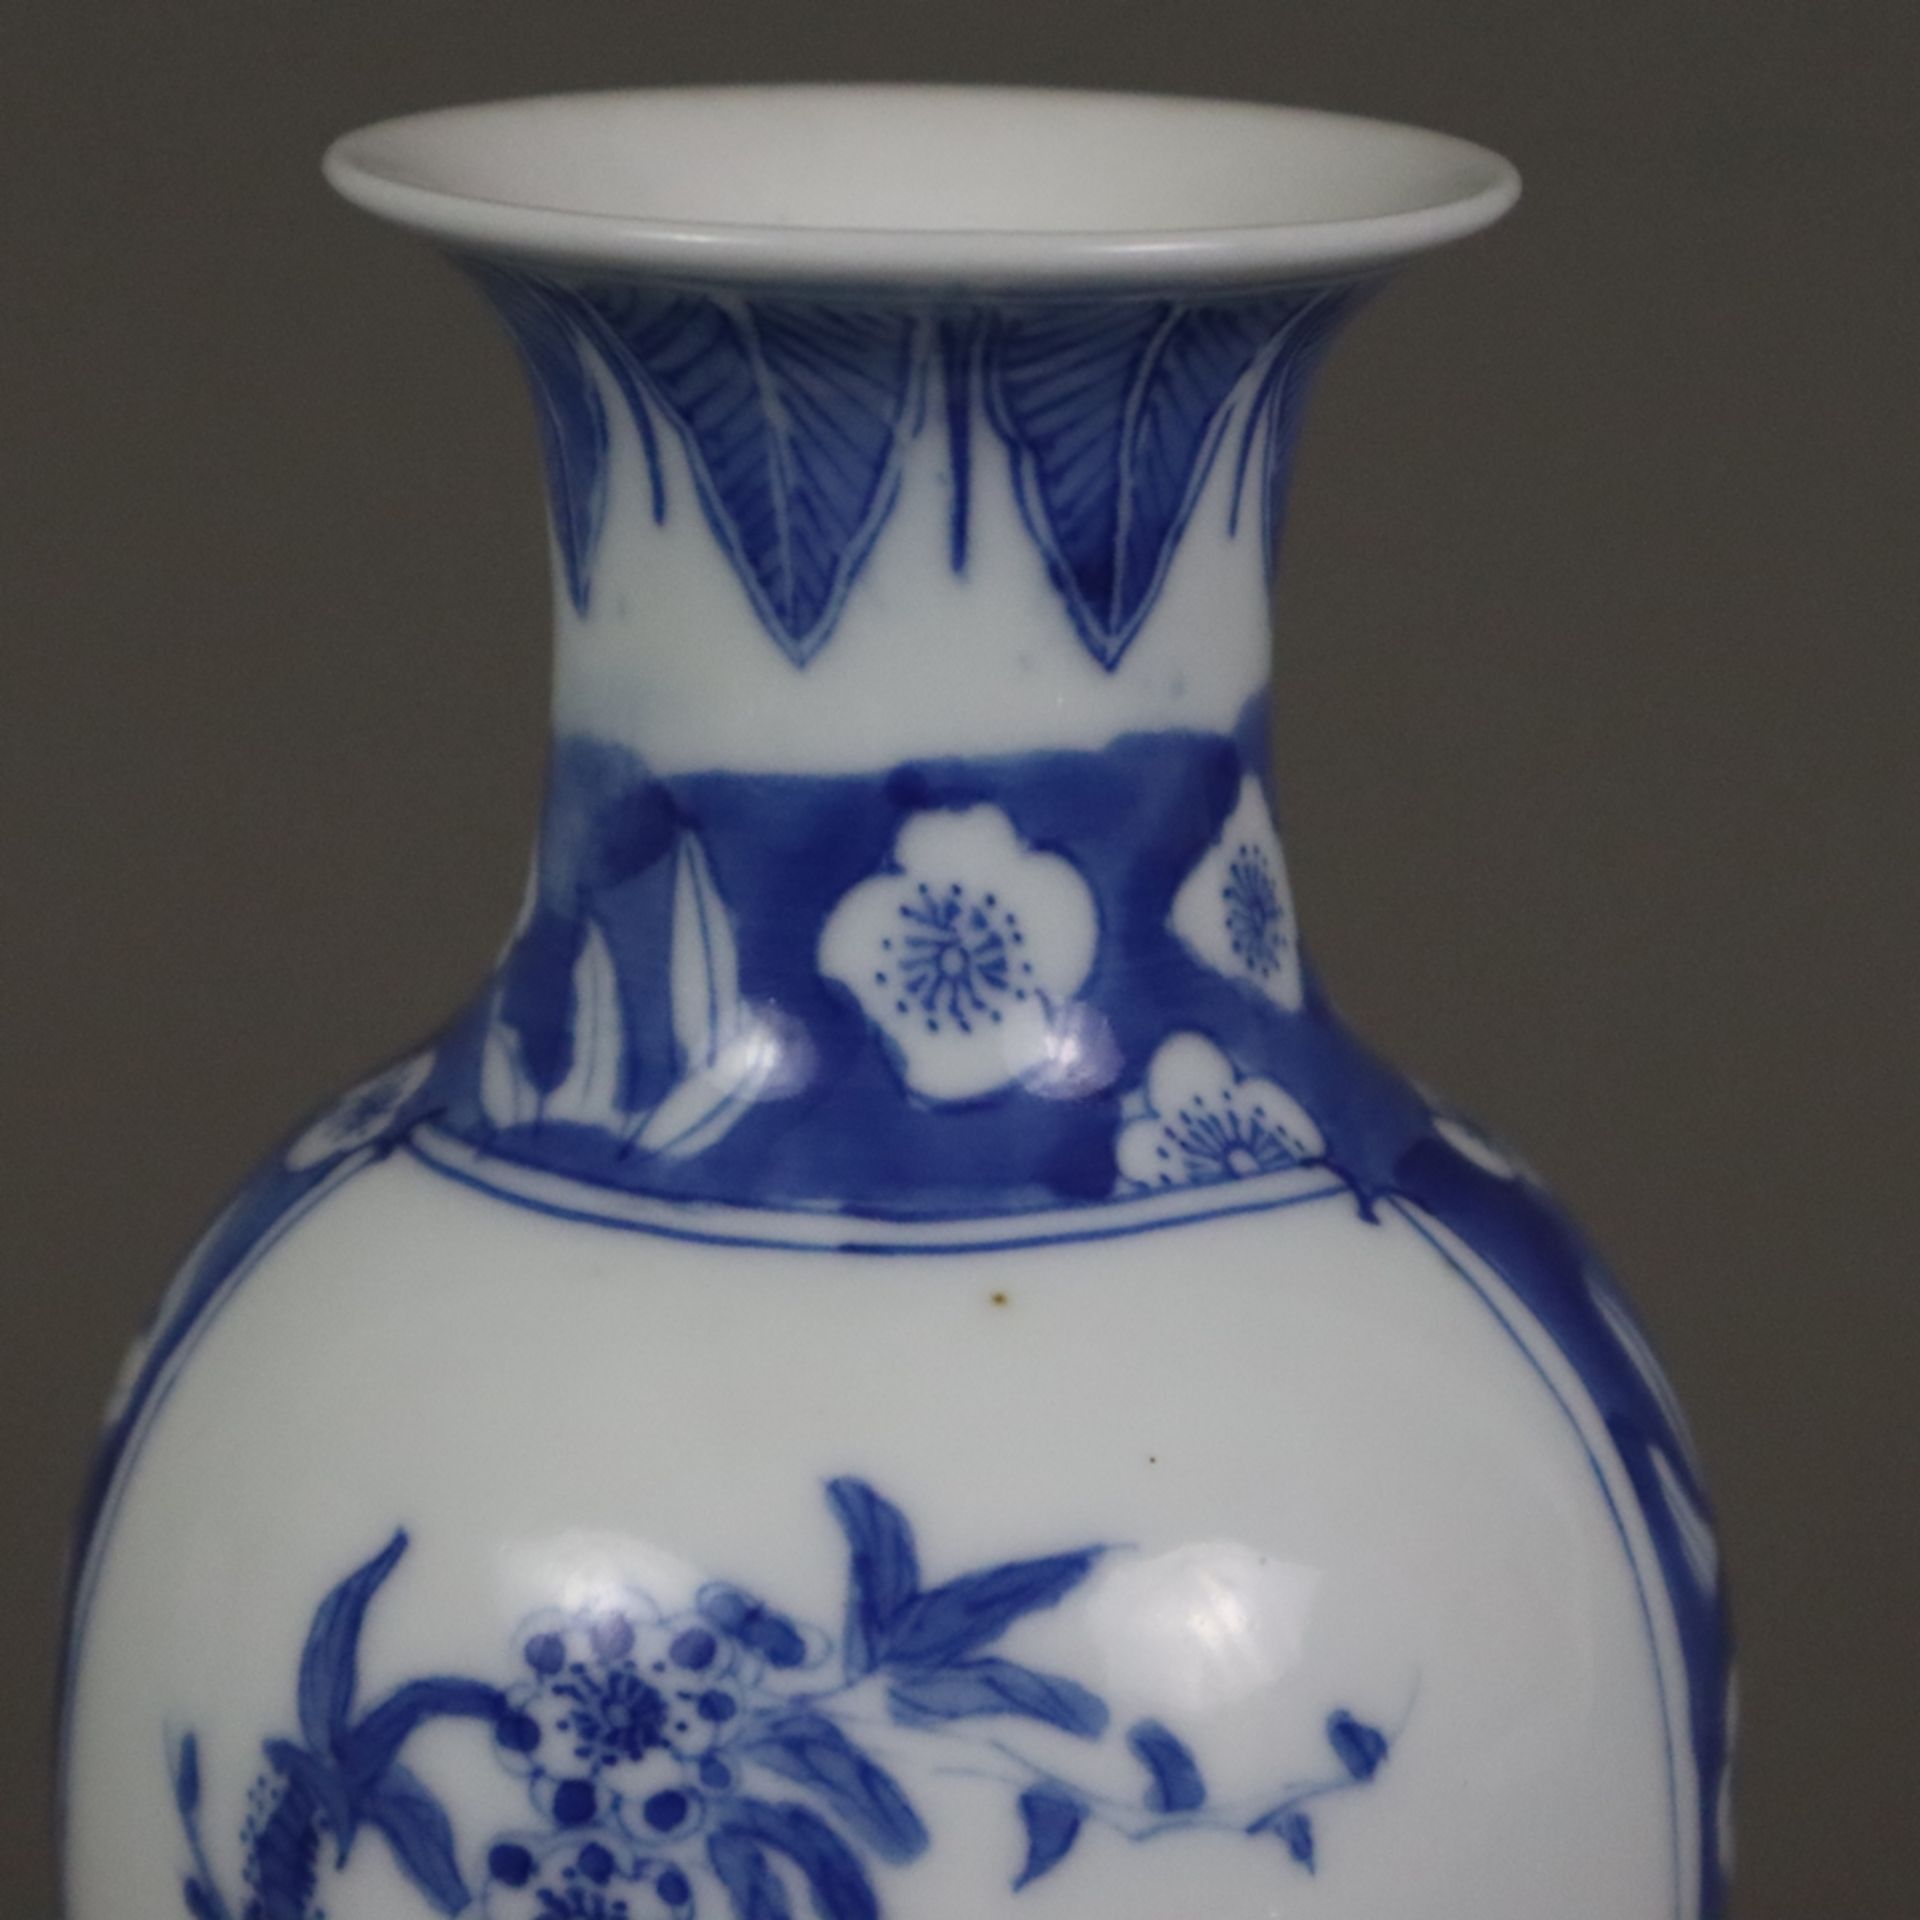 Blau-weiße Balustervase - China 20.Jh., dekoriert in Unterglasurblau mit Pflaumenblüten über gebors - Bild 2 aus 8